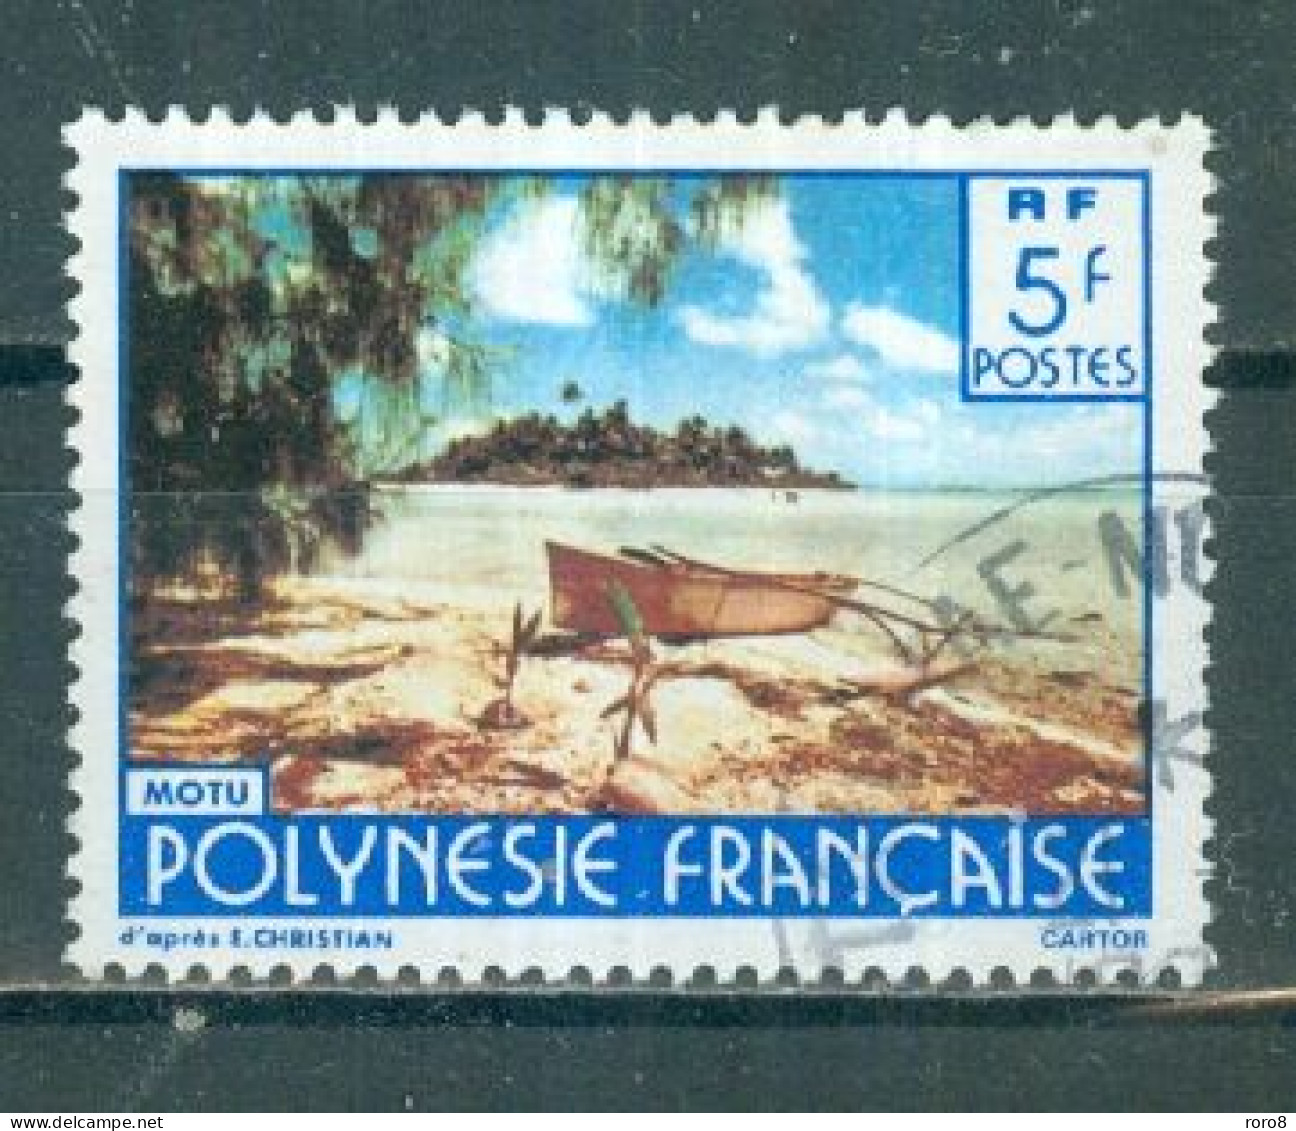 POLYNESIE - N°254 Oblitéré - Paysages De La Polynésie Française. Signarure "CARTOR". - Usati